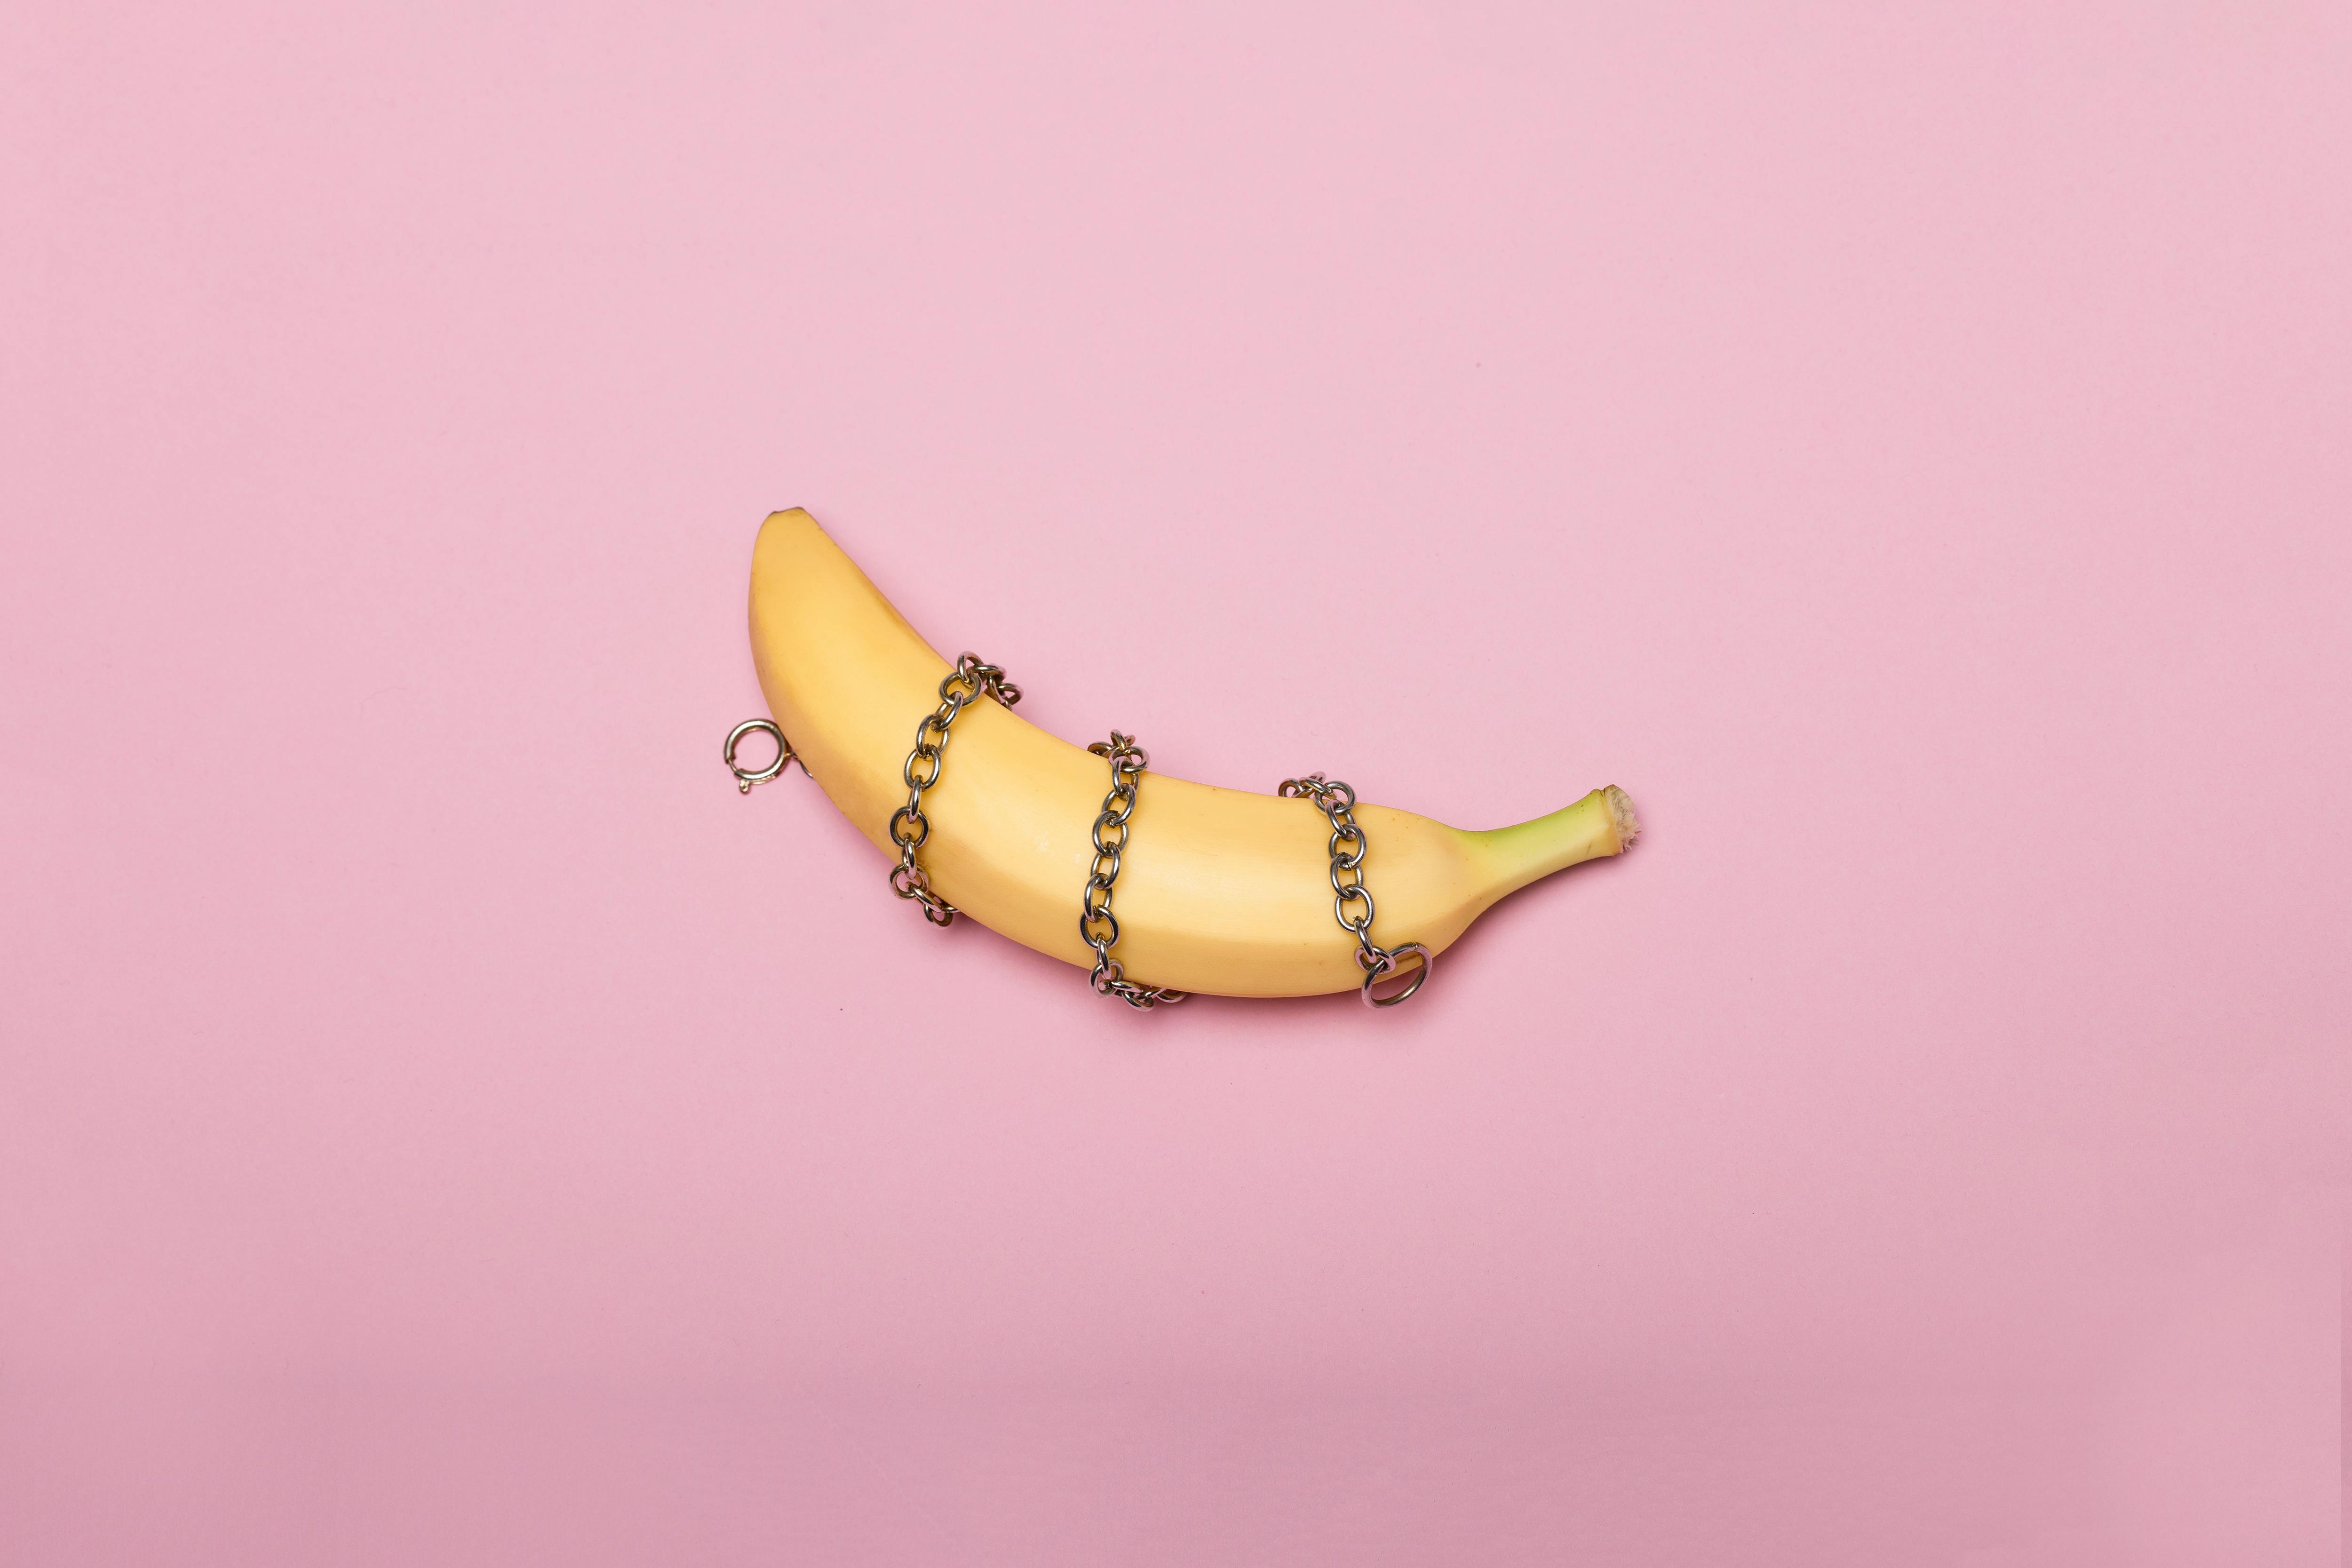 Бесплатные стоковые фото на тему unporn, банан, еда, завернутый, искусство, концептуальный, представление, розовая поверхность, розовый фон, секс арт, фрукты, цепь